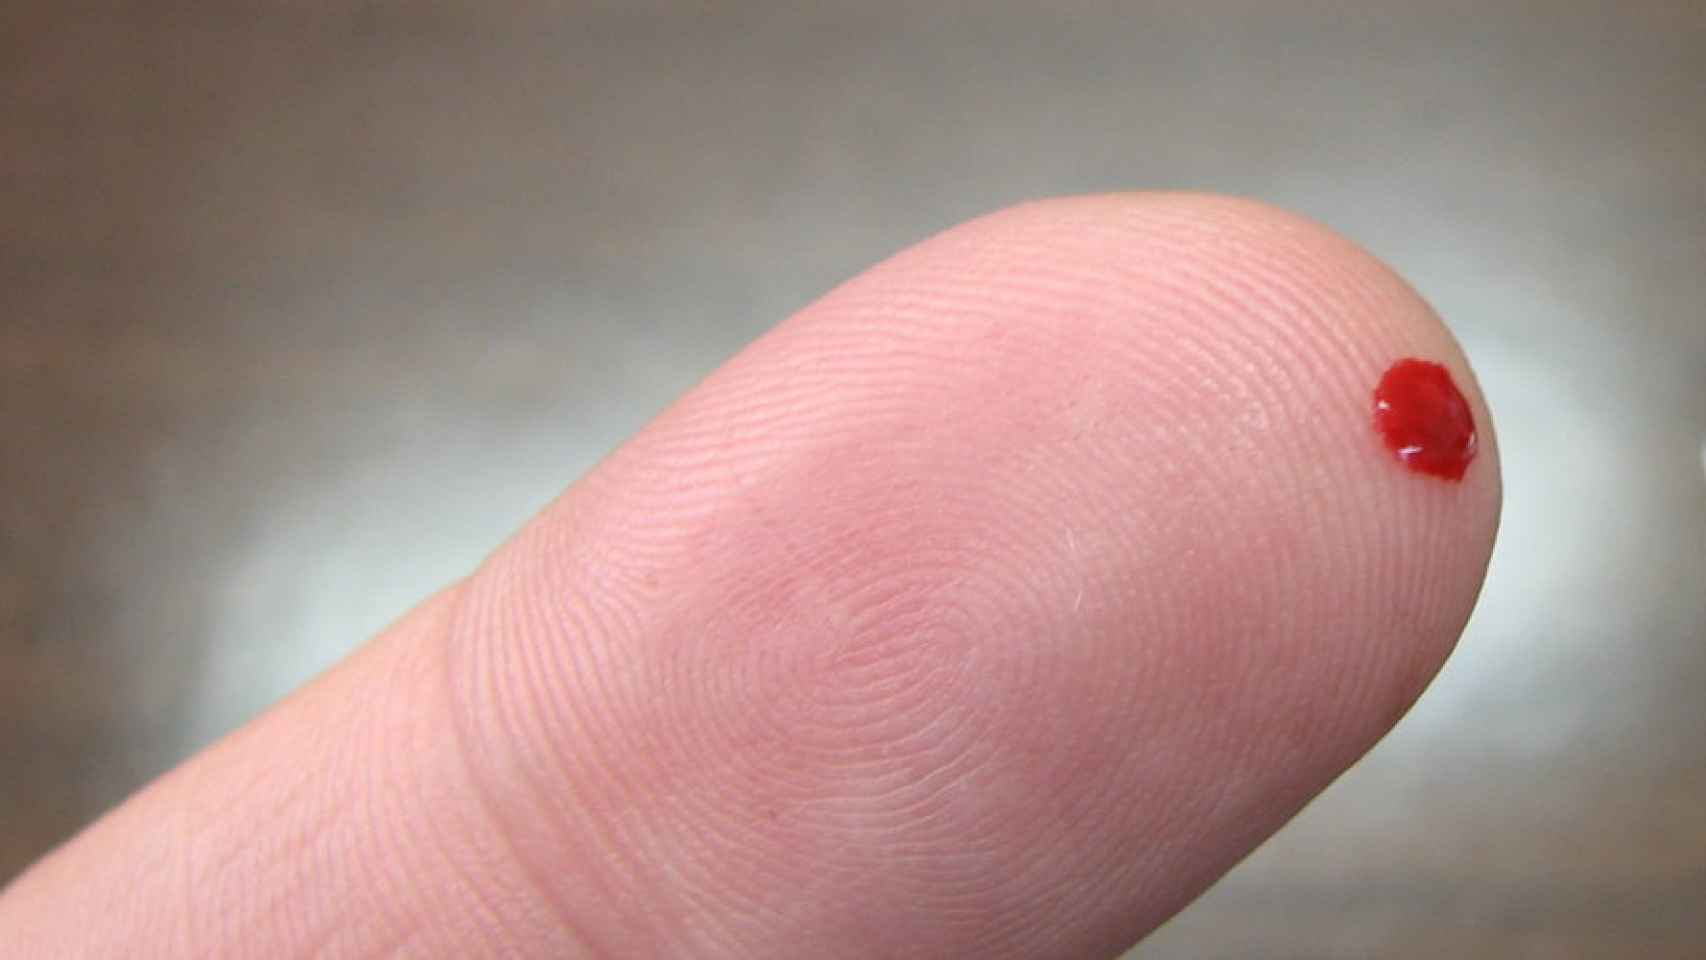 Pinchazo en el dedo de un diabético para medir el azucar en sangre.